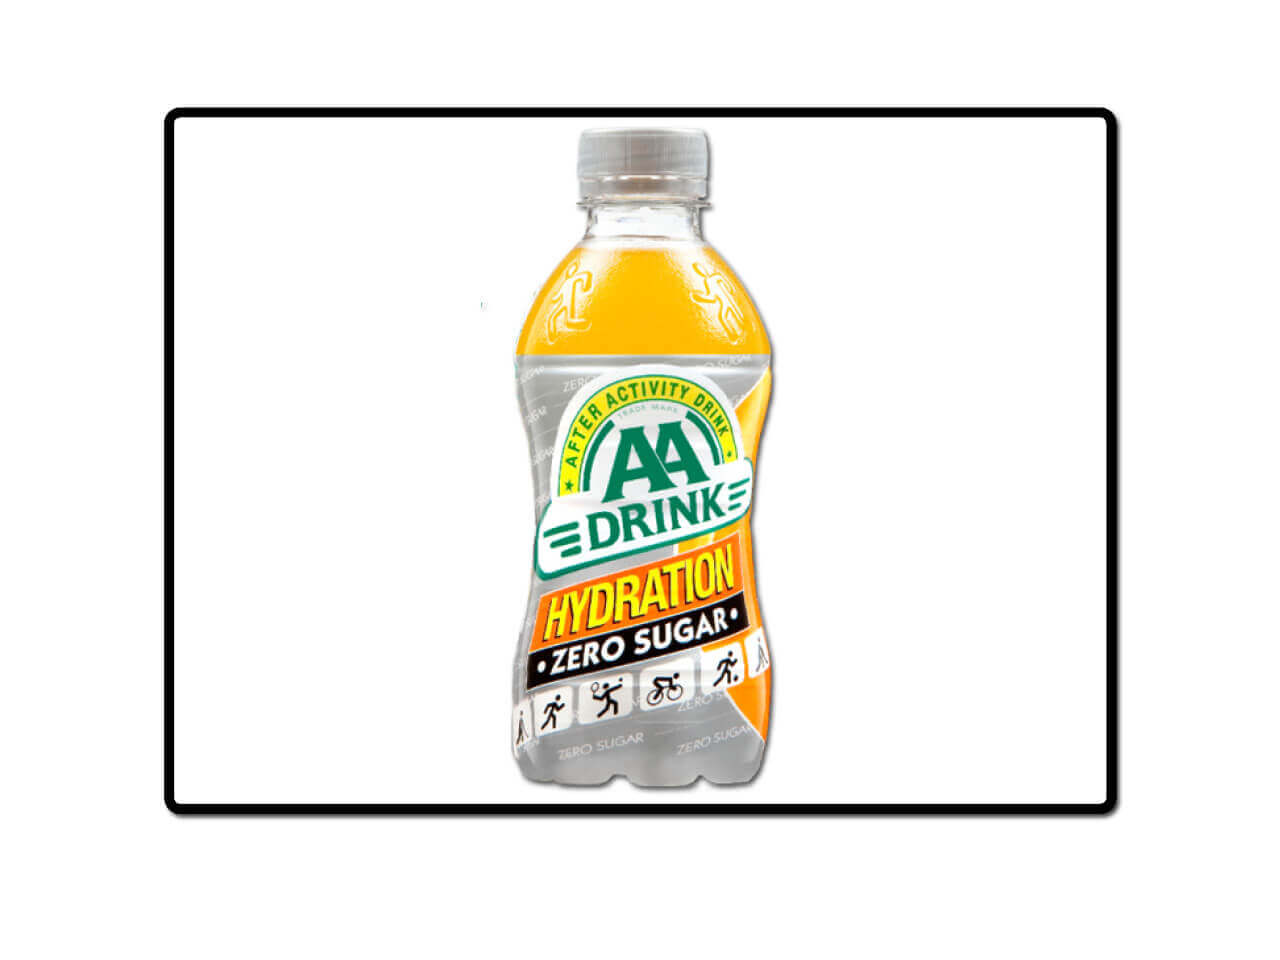 produktbilde - aa drink - Hydration zero sugar